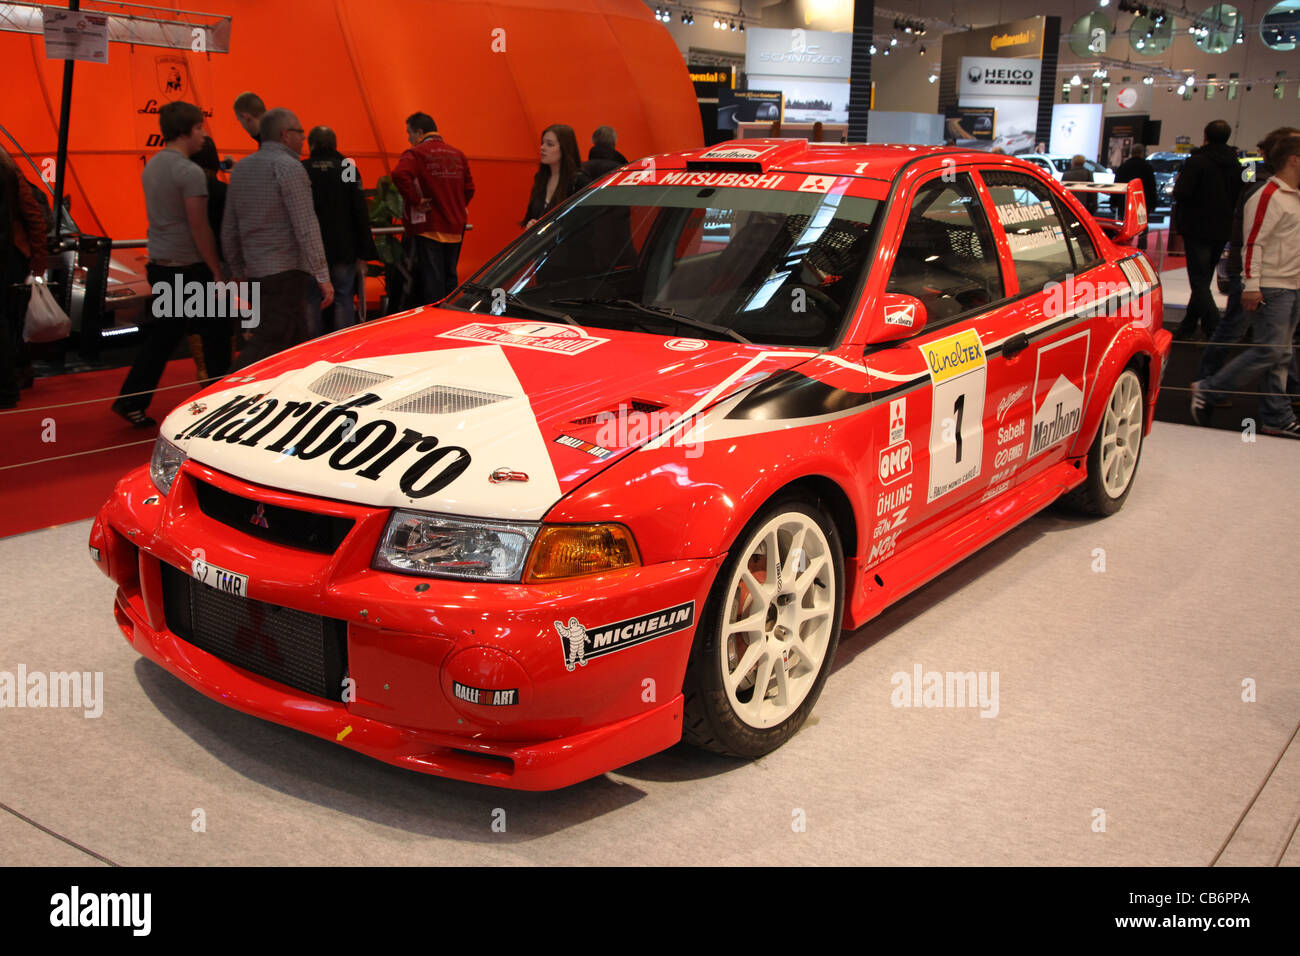 Mitsubishi Lancer Evo VI - Vainqueur de la voiture de rallye de Monte Carlo 1999 Banque D'Images